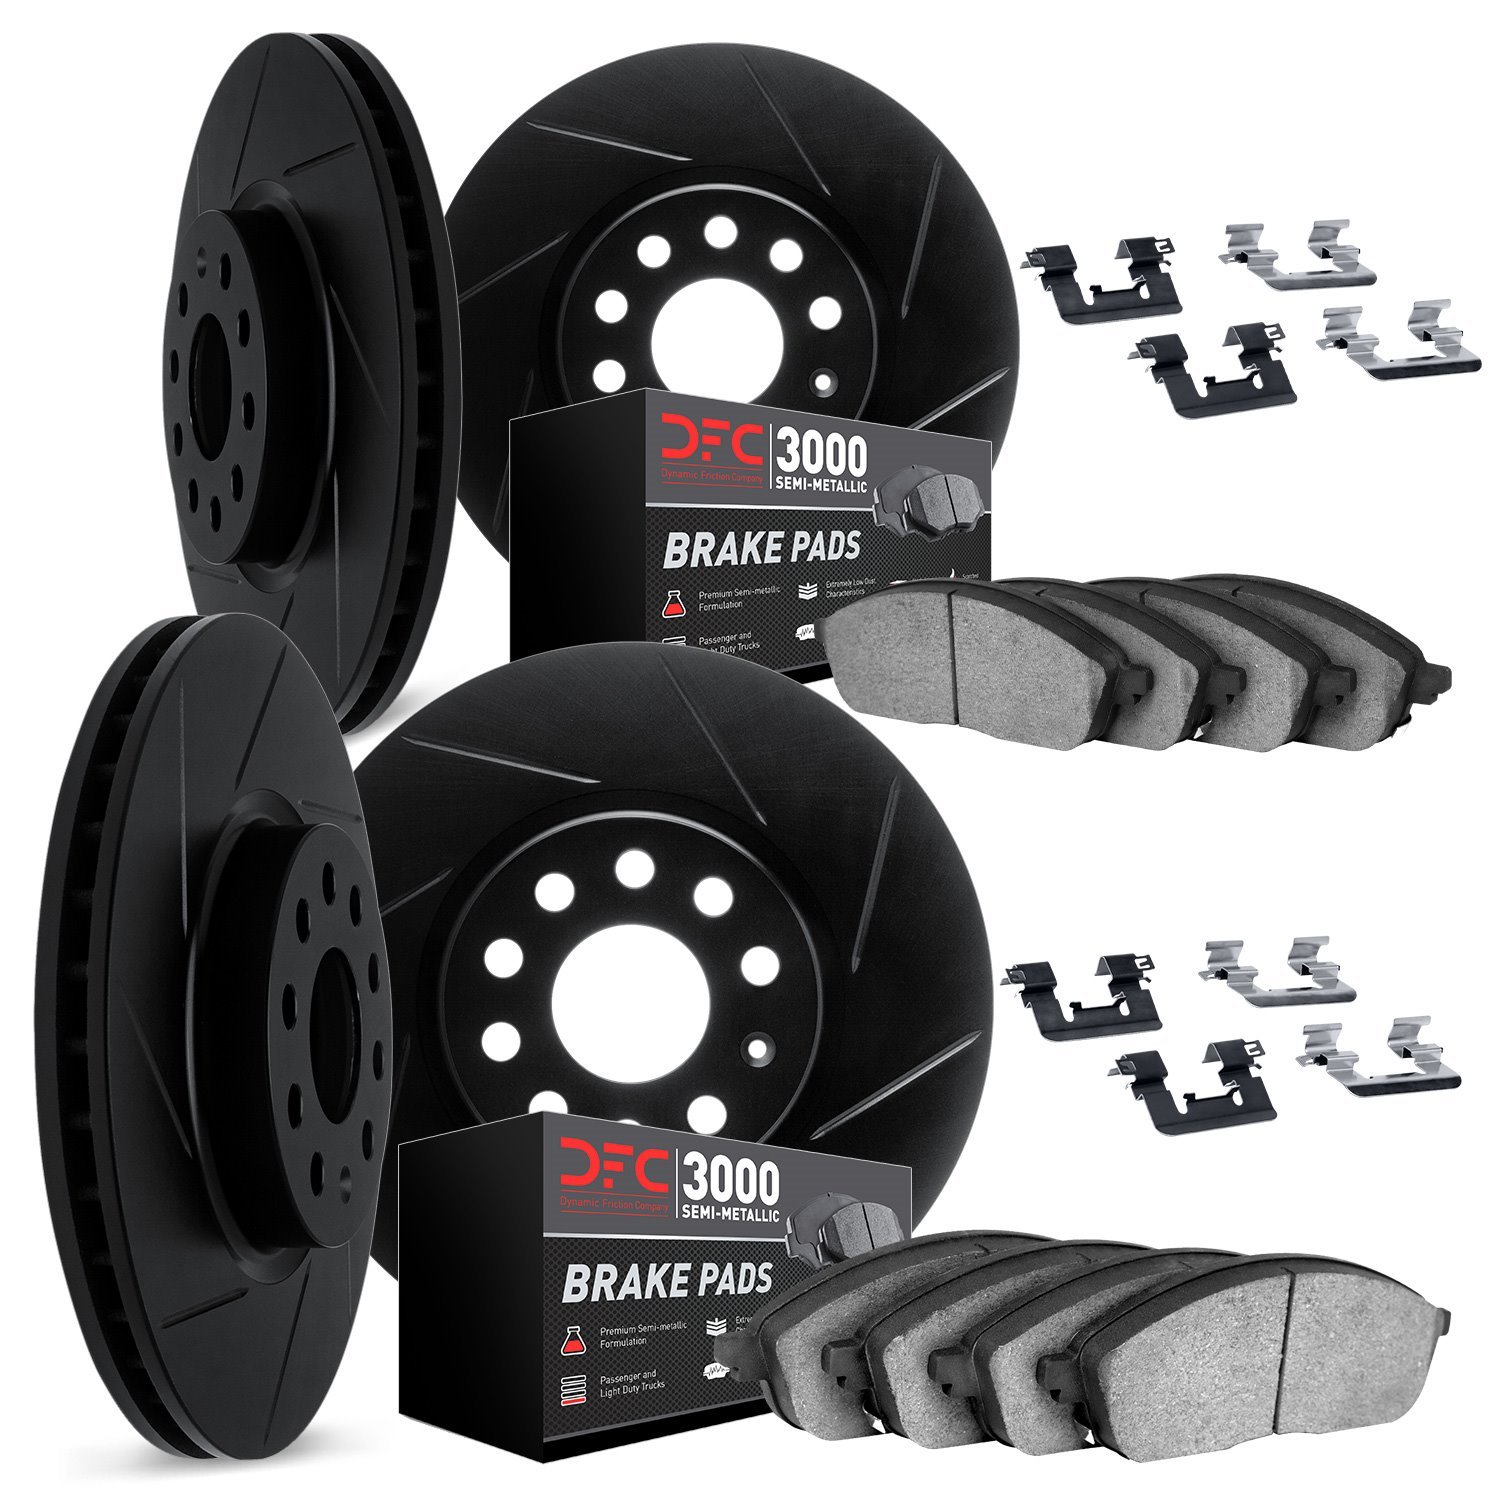 3114-68006 Slotted Brake Rotors with 3000-Series Semi-Metallic Brake Pads Kit & Hardware [Black], 2005-2014 Infiniti/Nissan, Pos